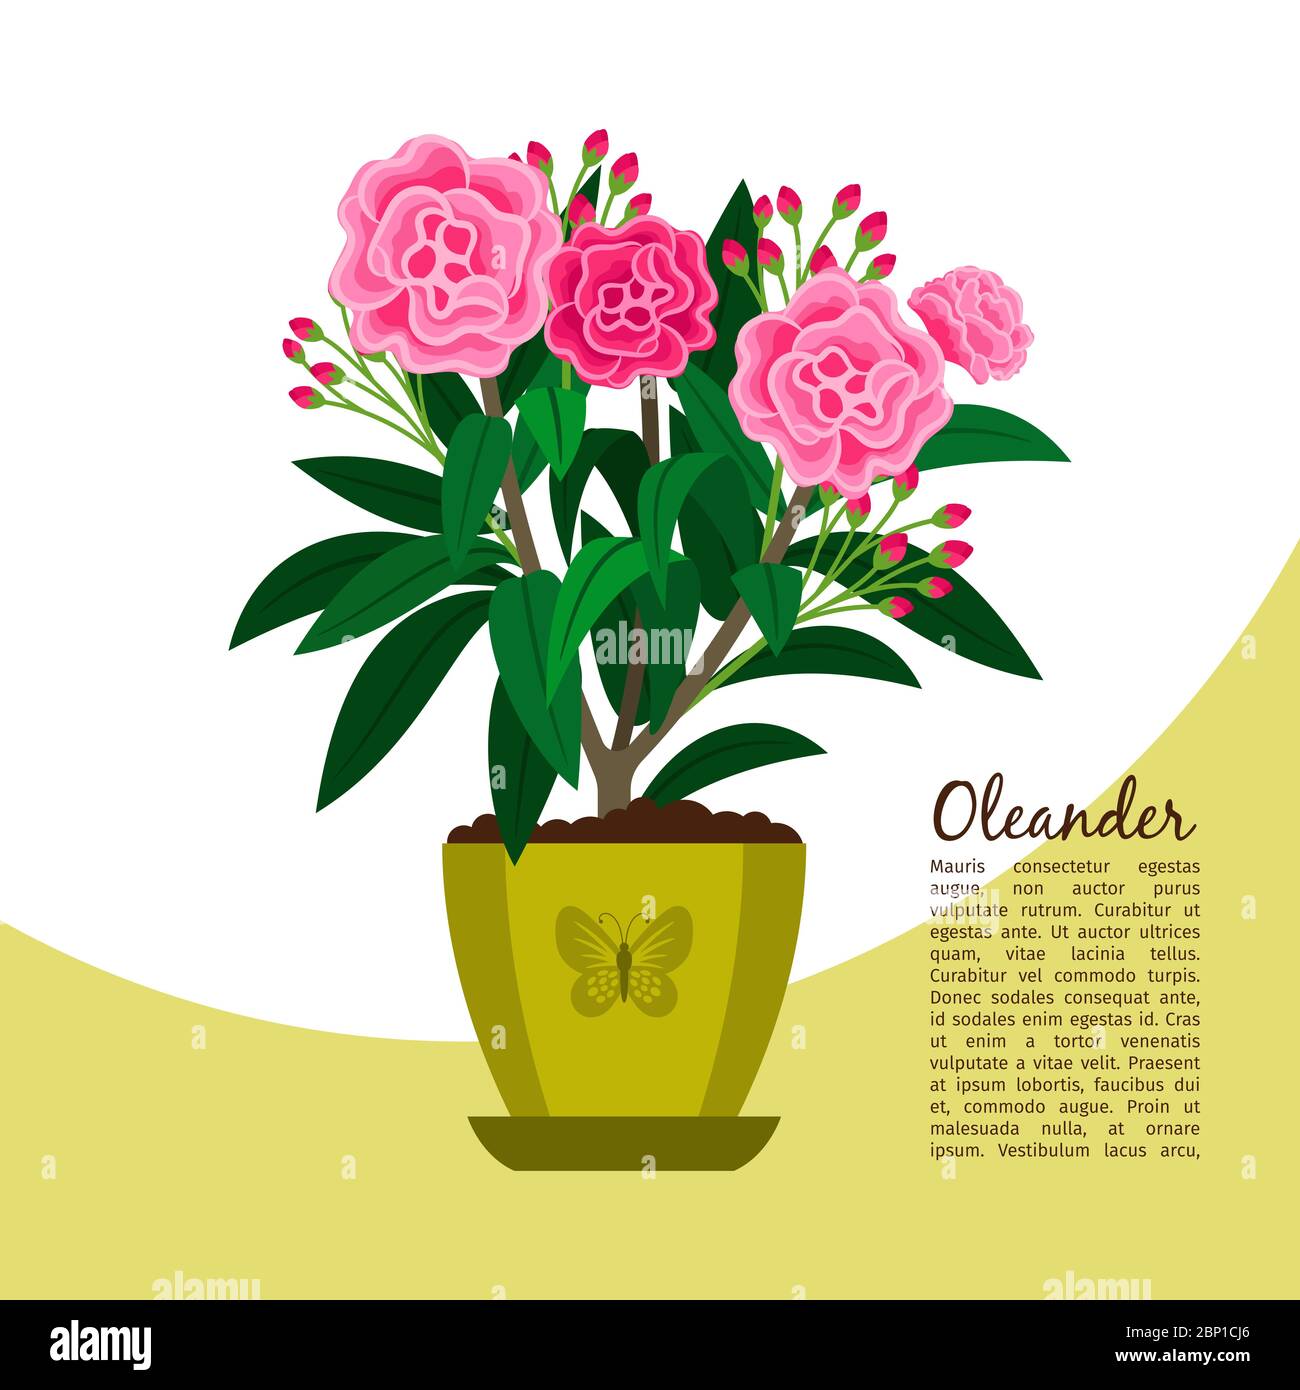 Oleander indoor plant in pot banner template, vector illustration Stock Vector